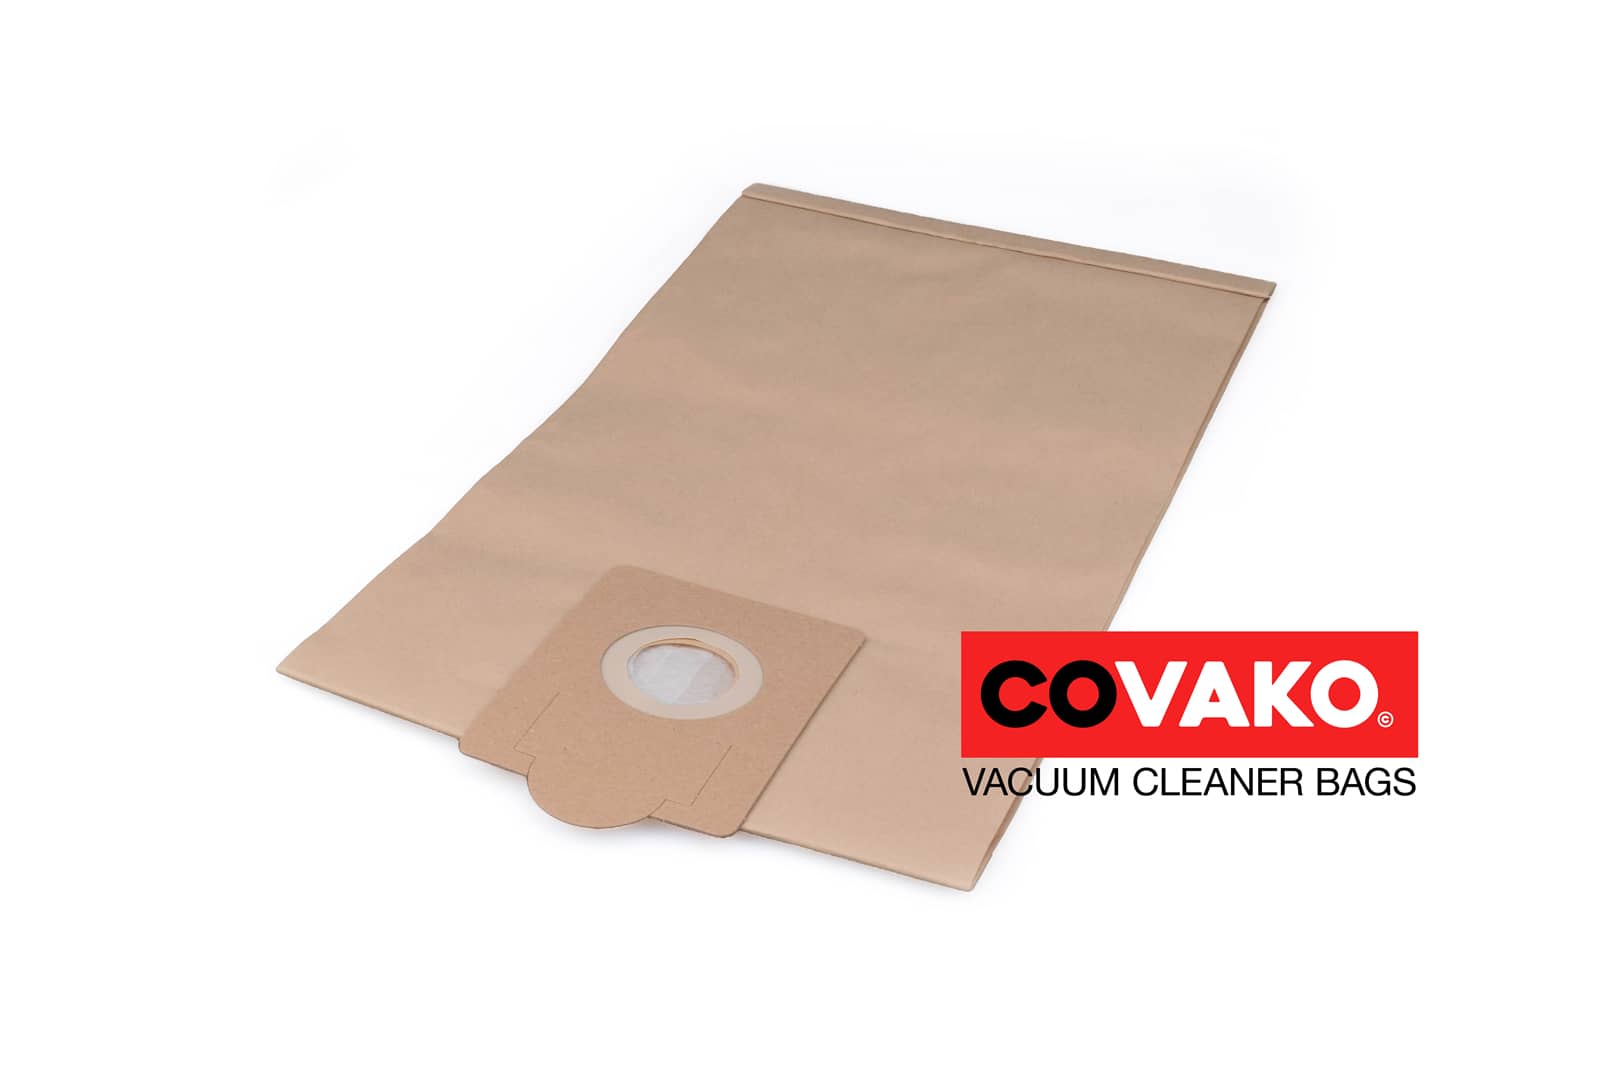 Fakir S 32 / Paper - Fakir vacuum cleaner bags